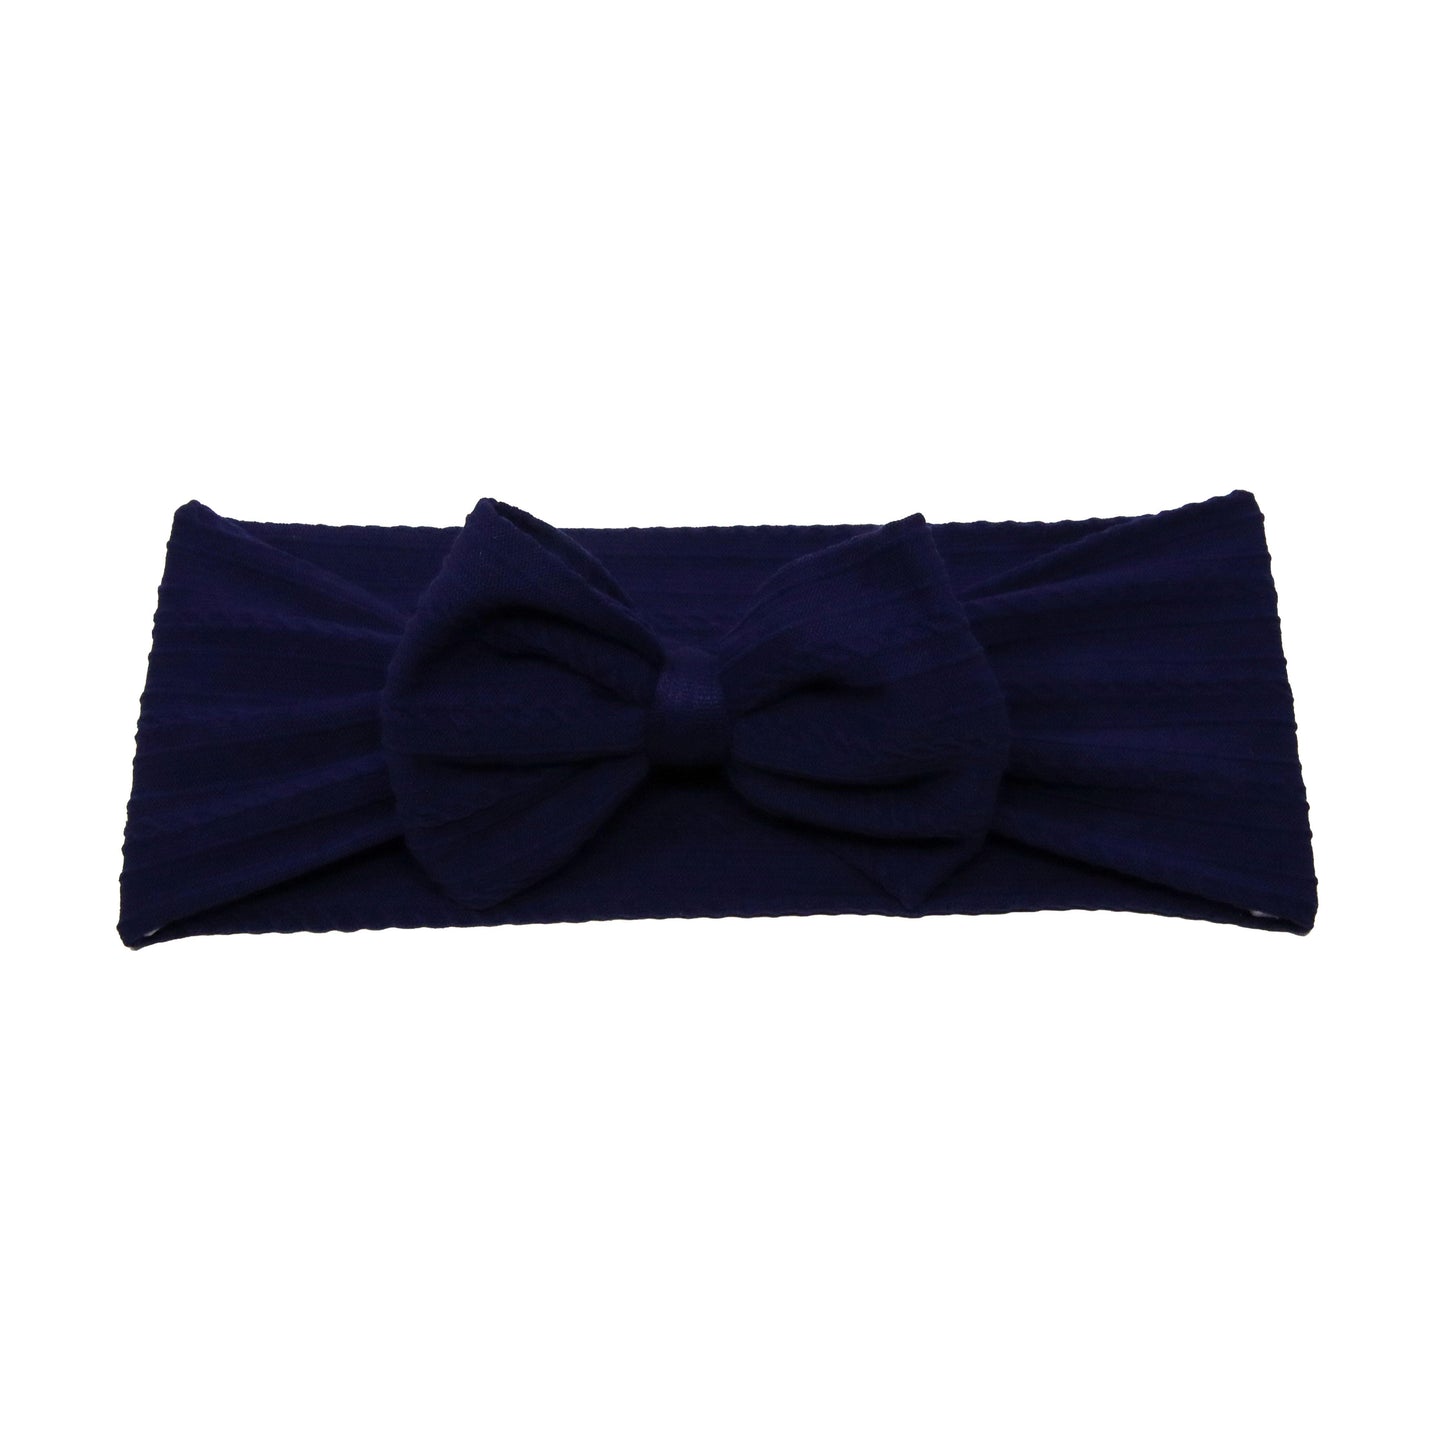 Navy Braid Knit Bow Headwrap 4"